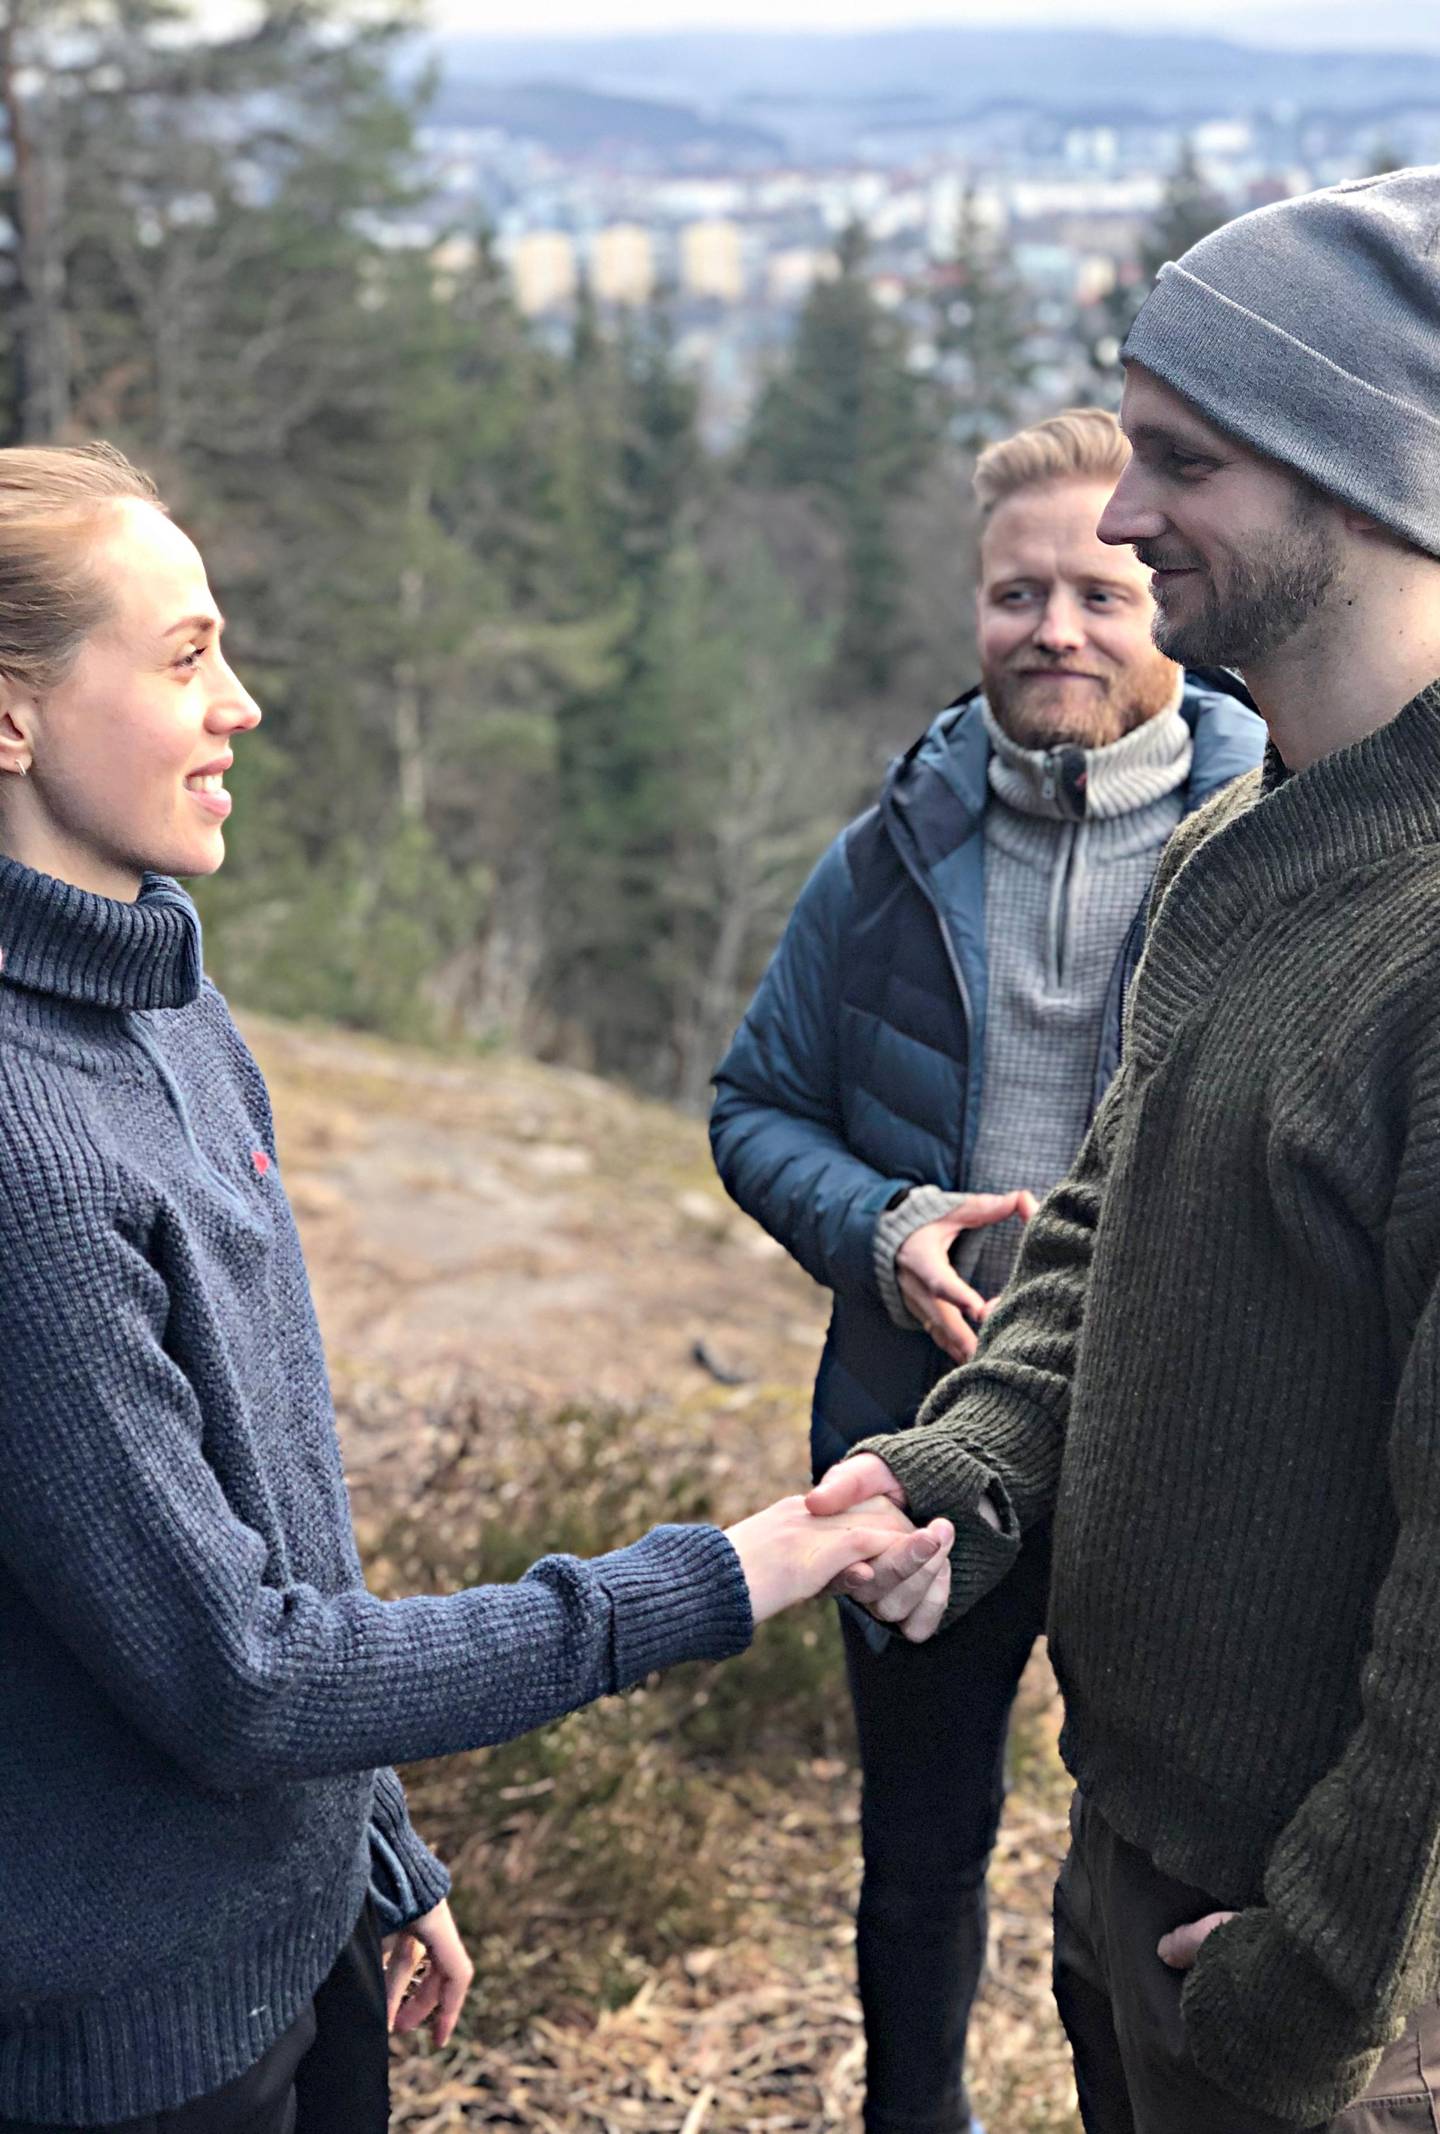 Da korona-krisen kom i veien for bryllupsplanene, valgte Morten og Johanne Føreland å heller gifte seg i skogen.